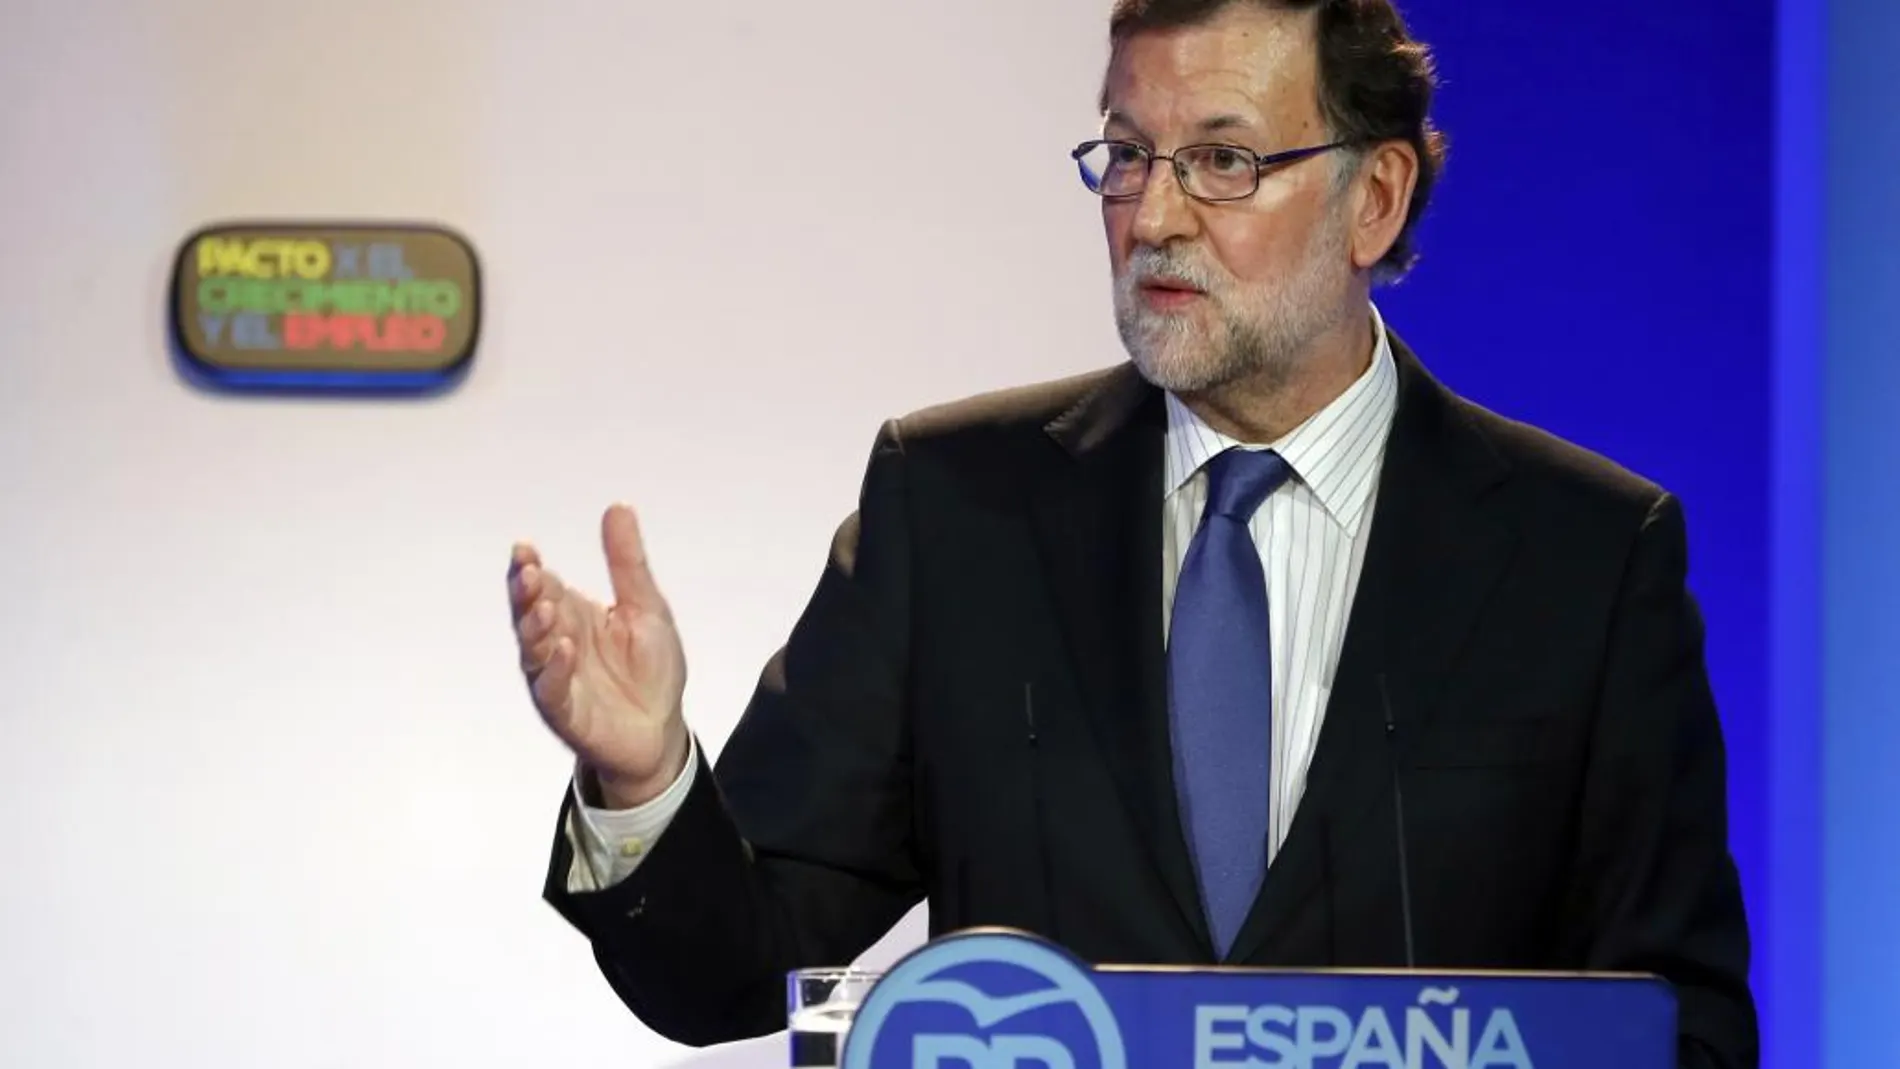 El presidente del Gobierno en funciones, Mariano Rajoy, durante su intervención en la clausura sobre el empleo